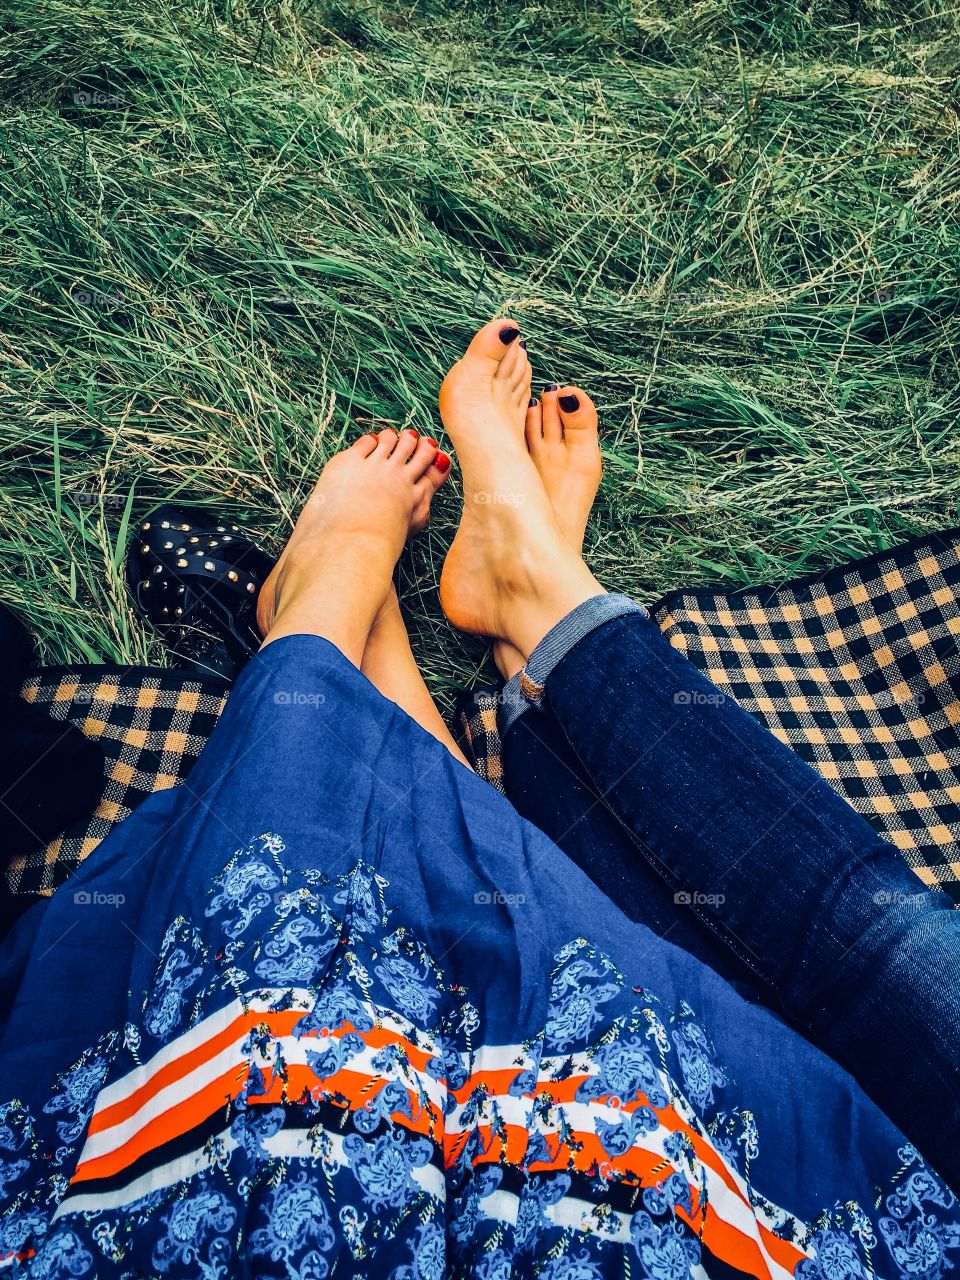 Summer. Picnic. Women’s legs and feet